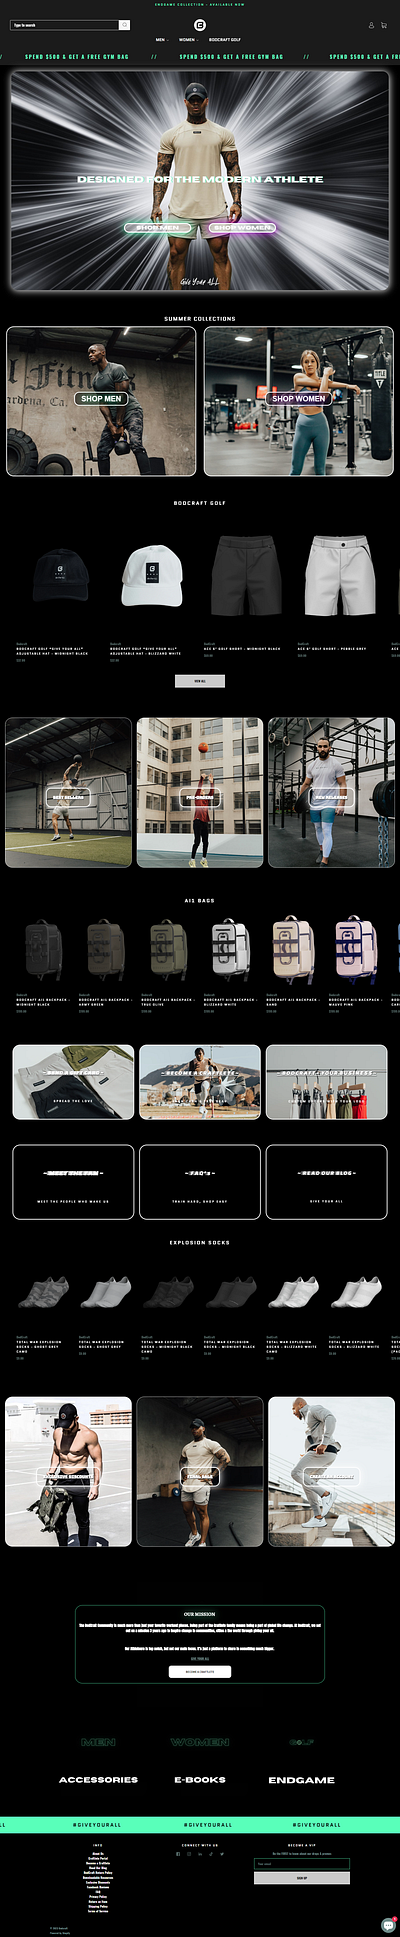 Gym clothing and Bag Brand Website Design and Development bags clothing brand gym brand shopify website ui